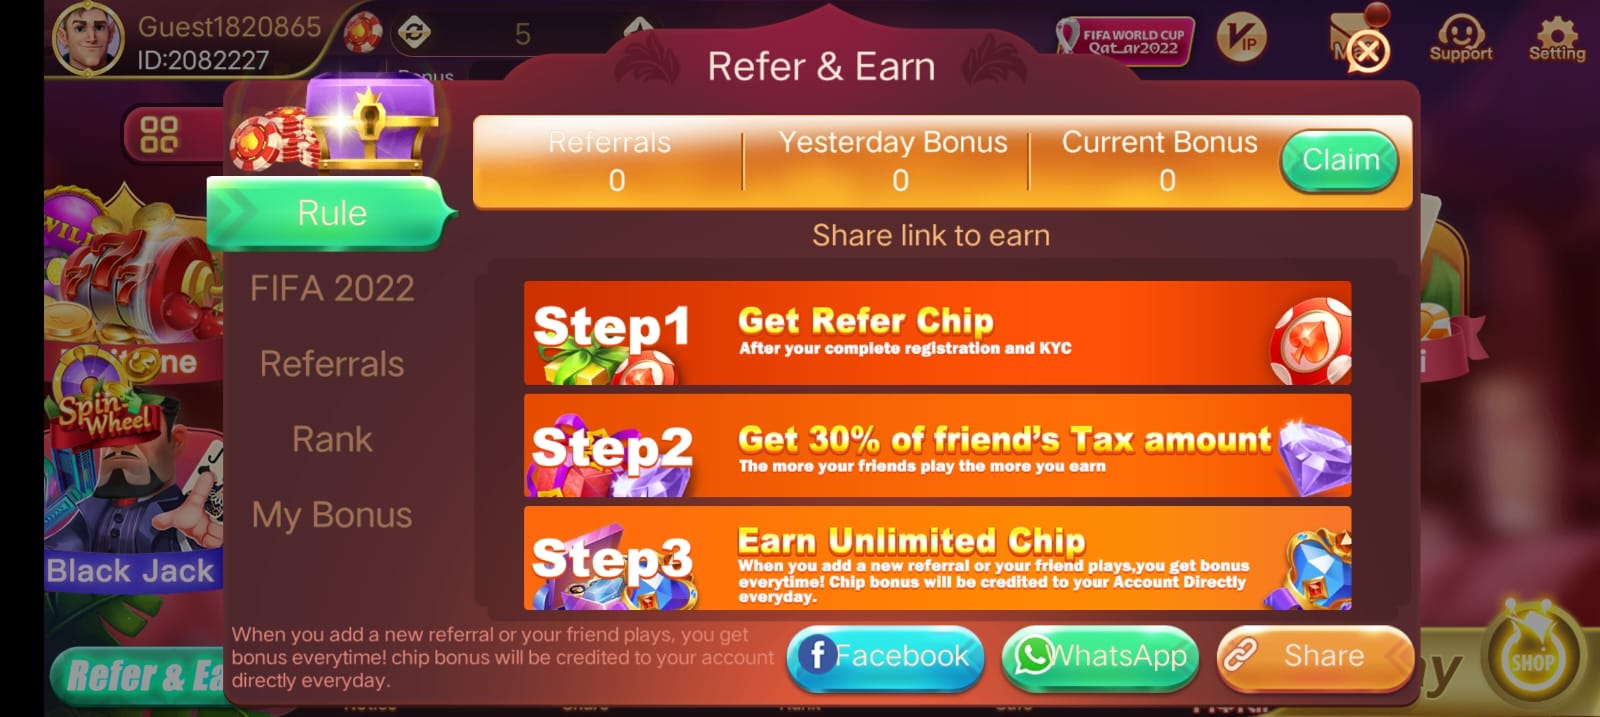 Refer & Earn In Rummy Cash App 